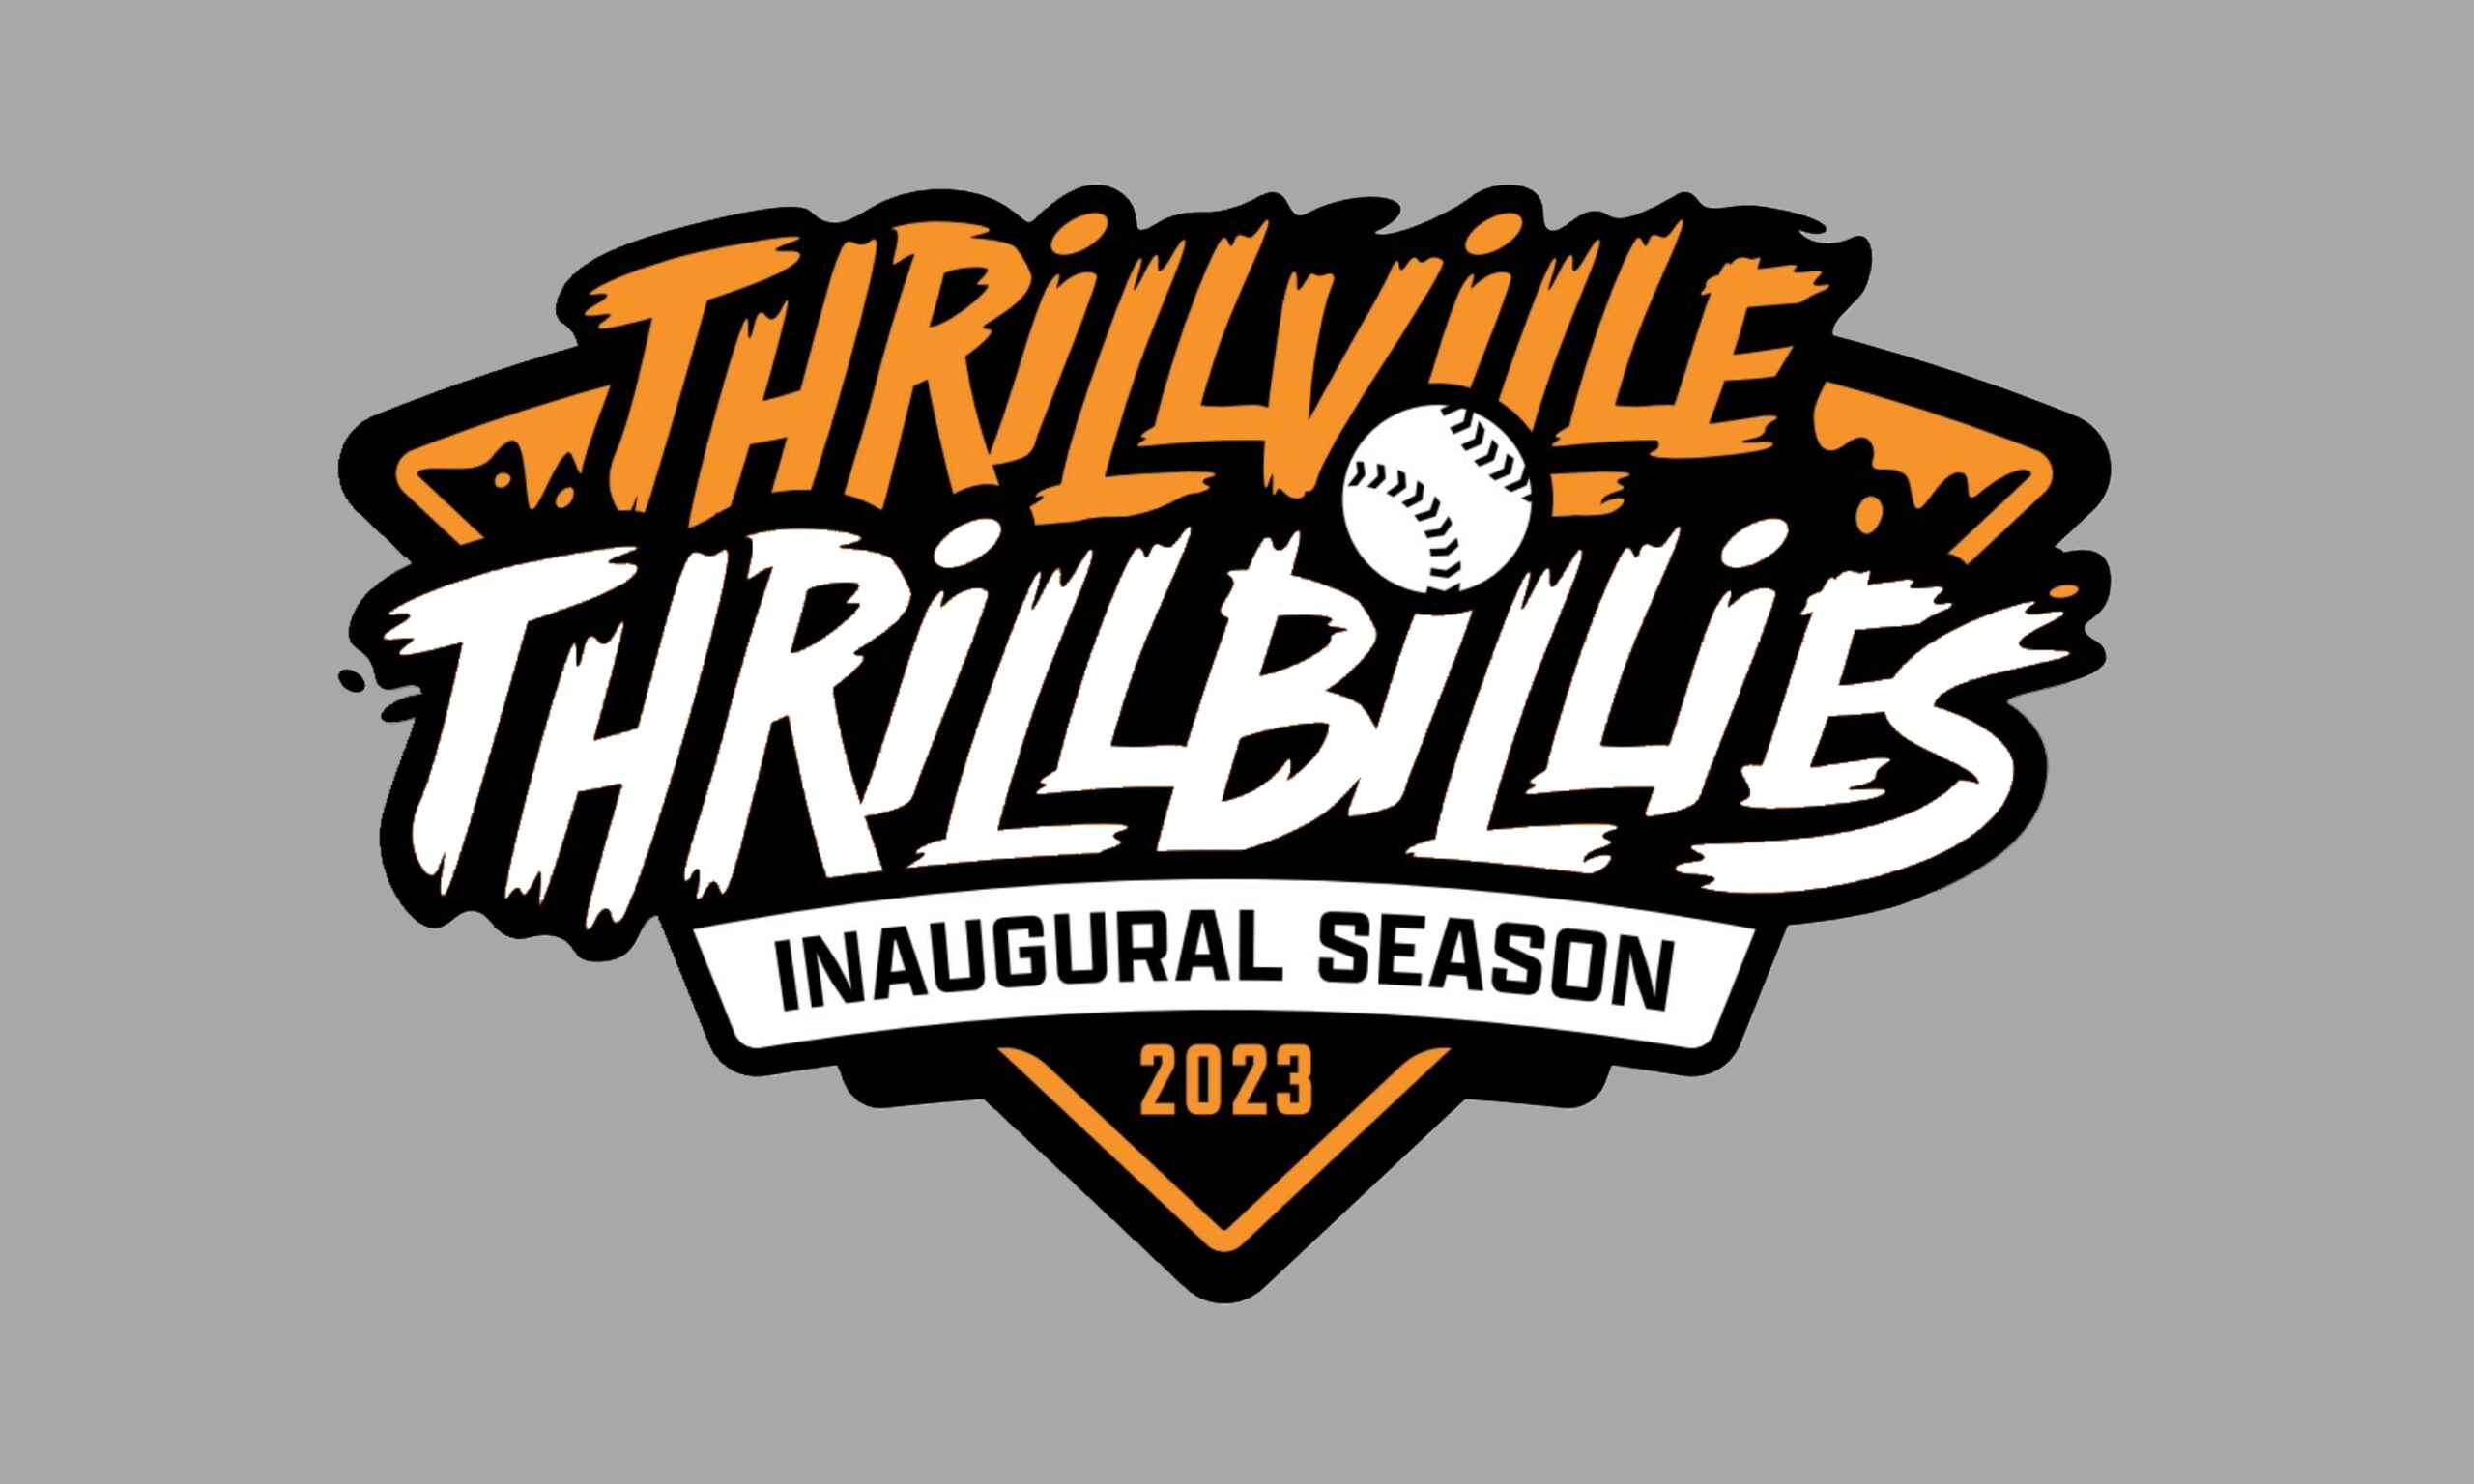 thrillville-thrillbillies-innaugural-season-marion-illinois